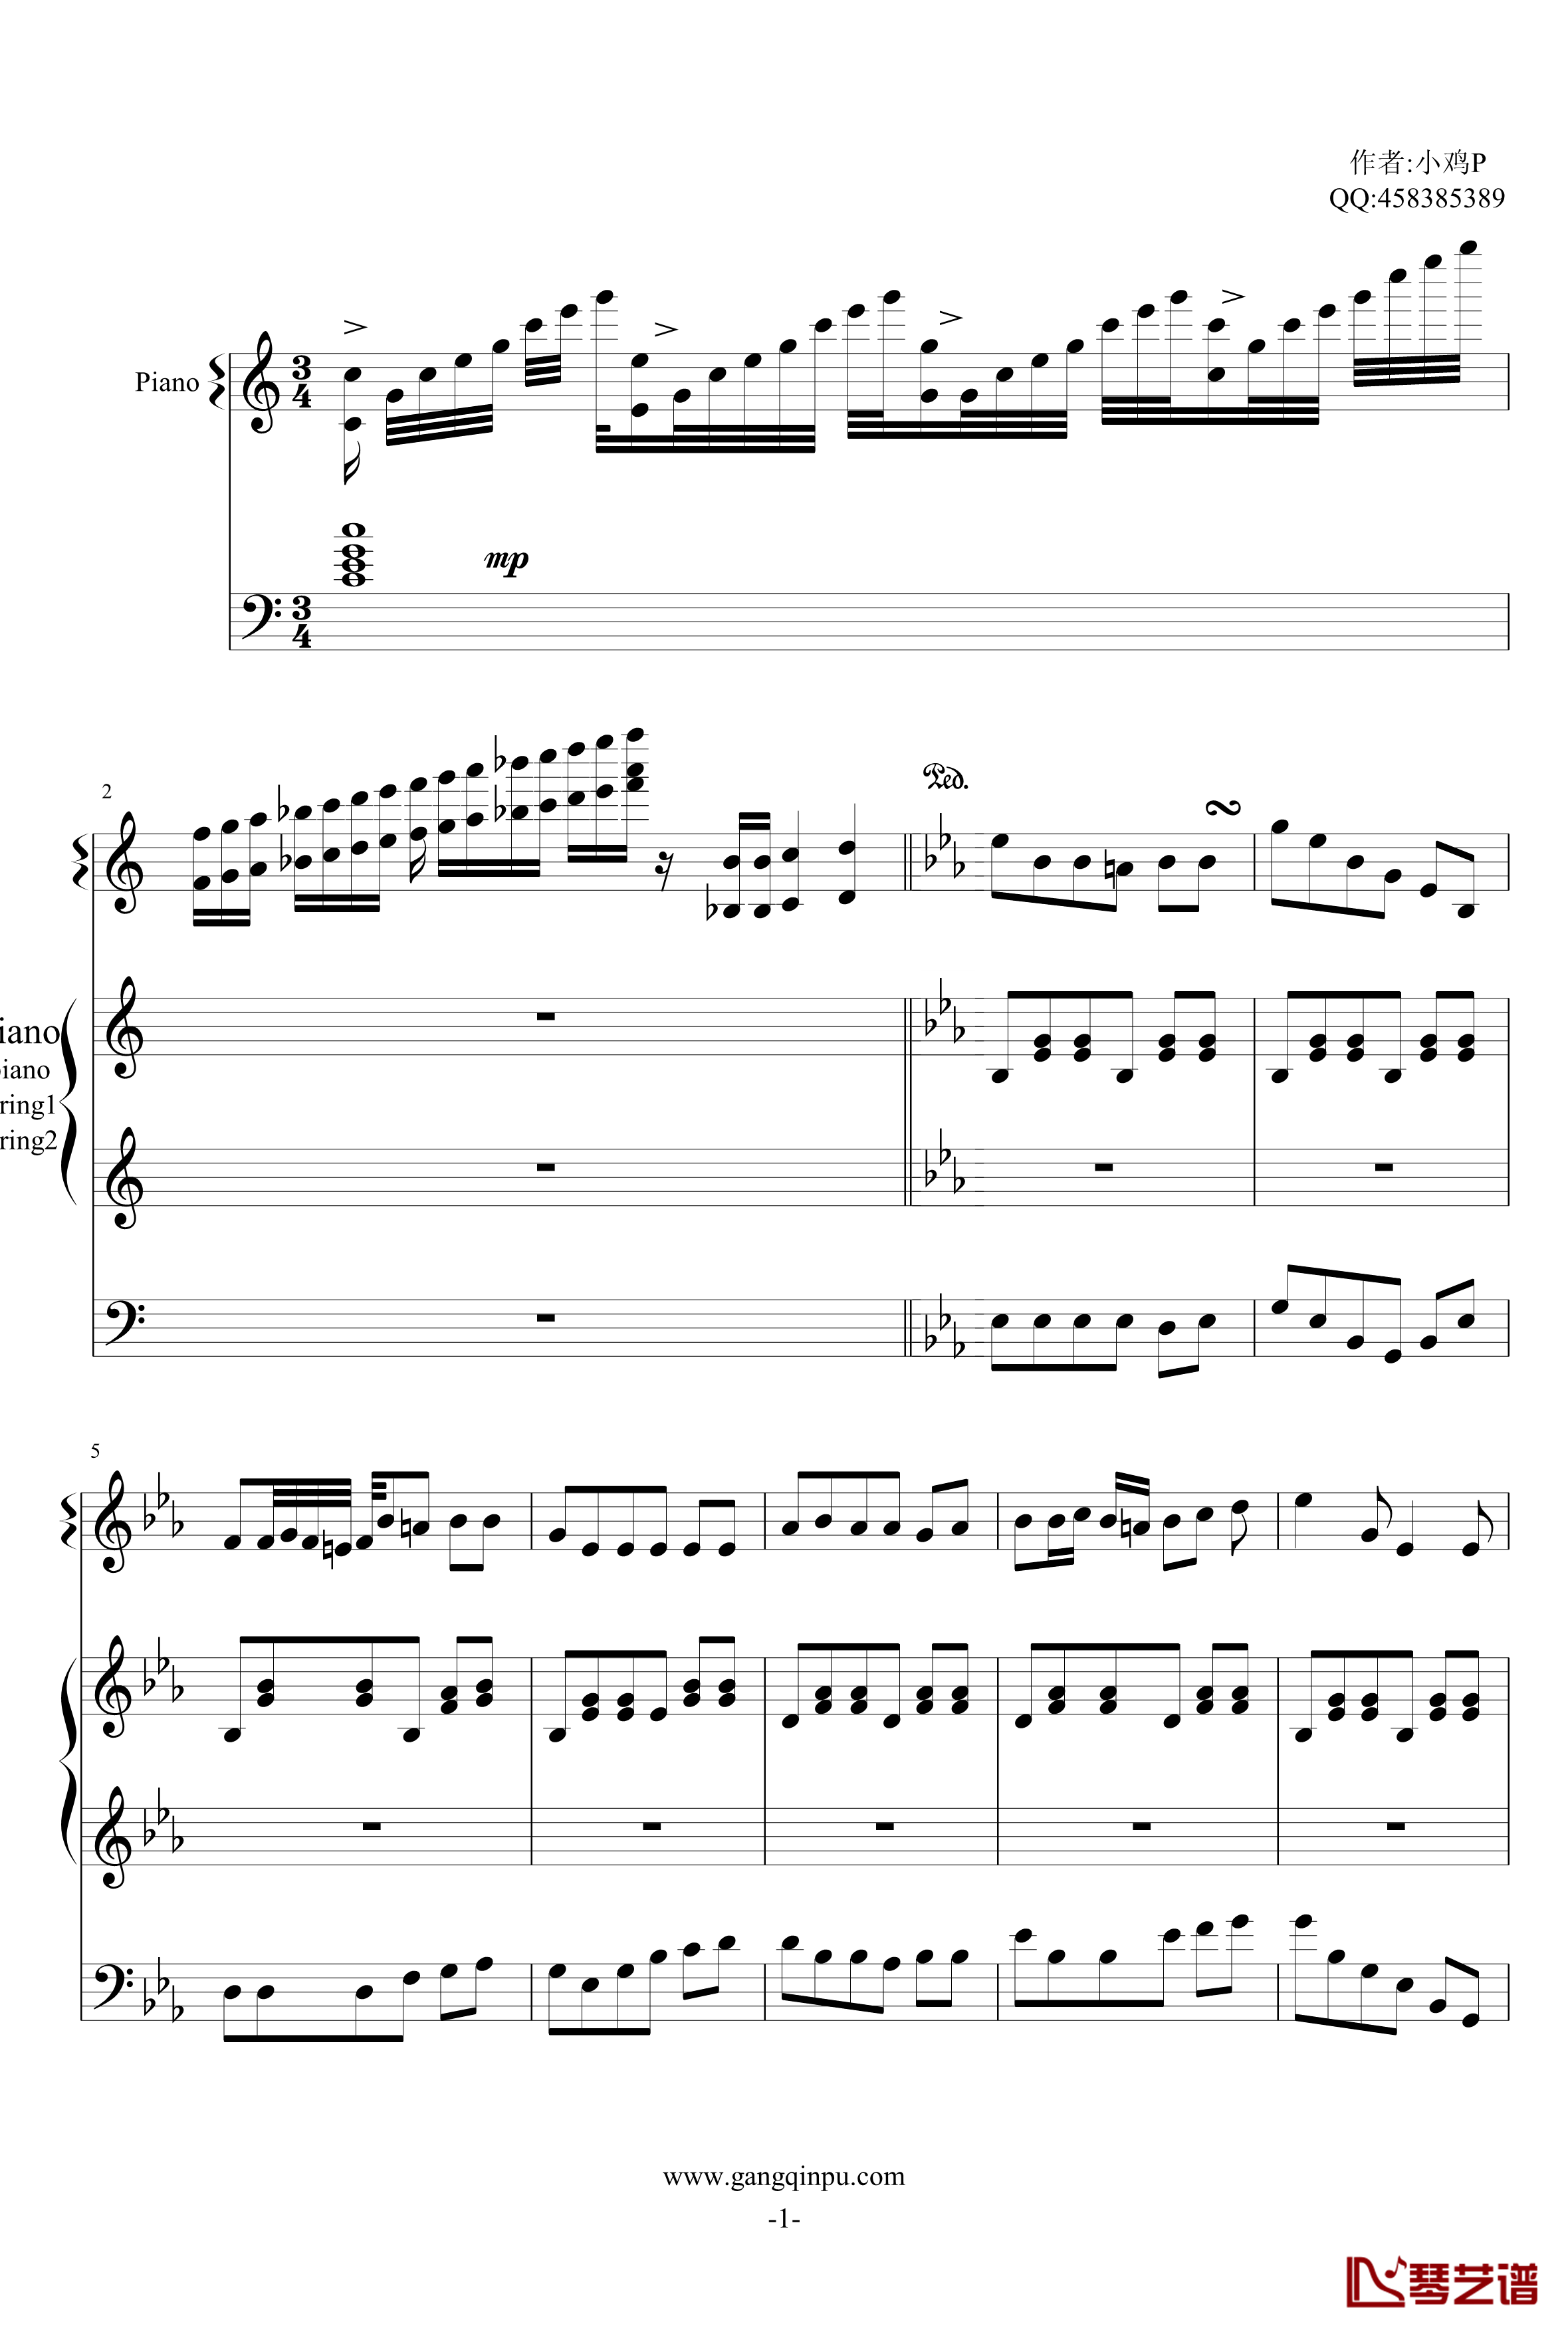 钢琴协奏圆舞曲1钢琴谱-红木鸡1